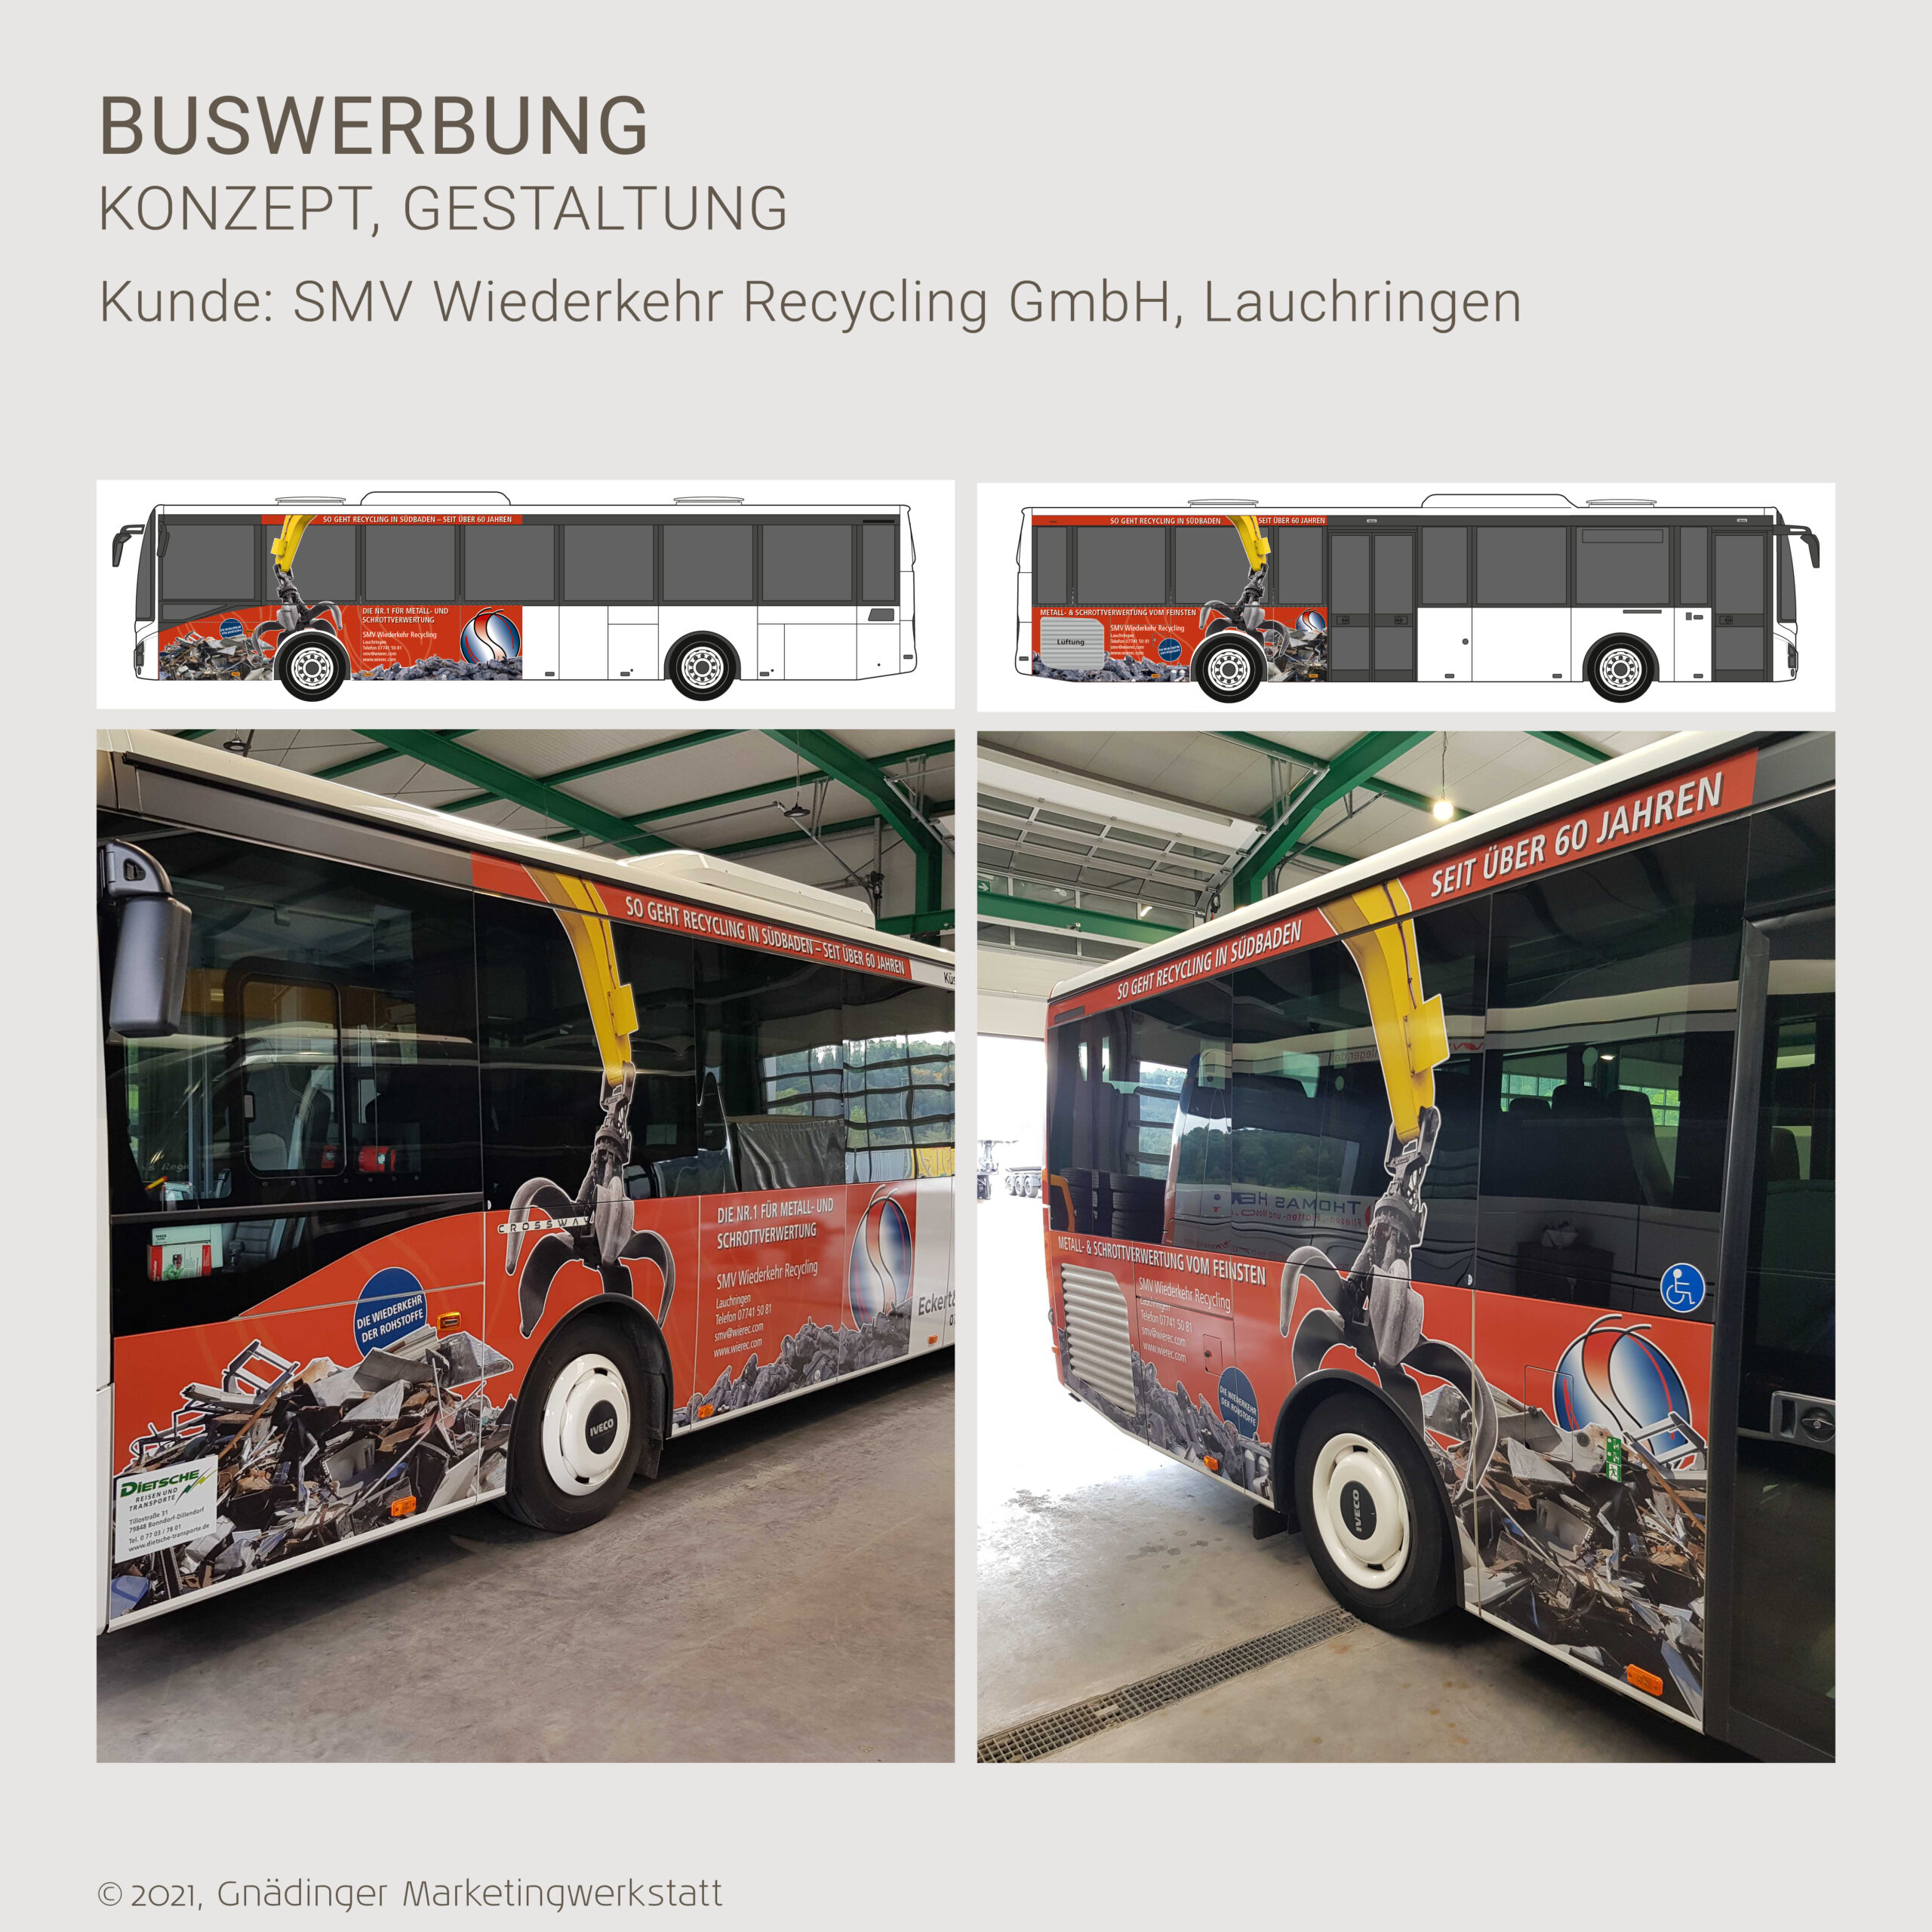 WEB1_MW_Buswerbung_SMW-Wiederkehr-Recycling_03-2023